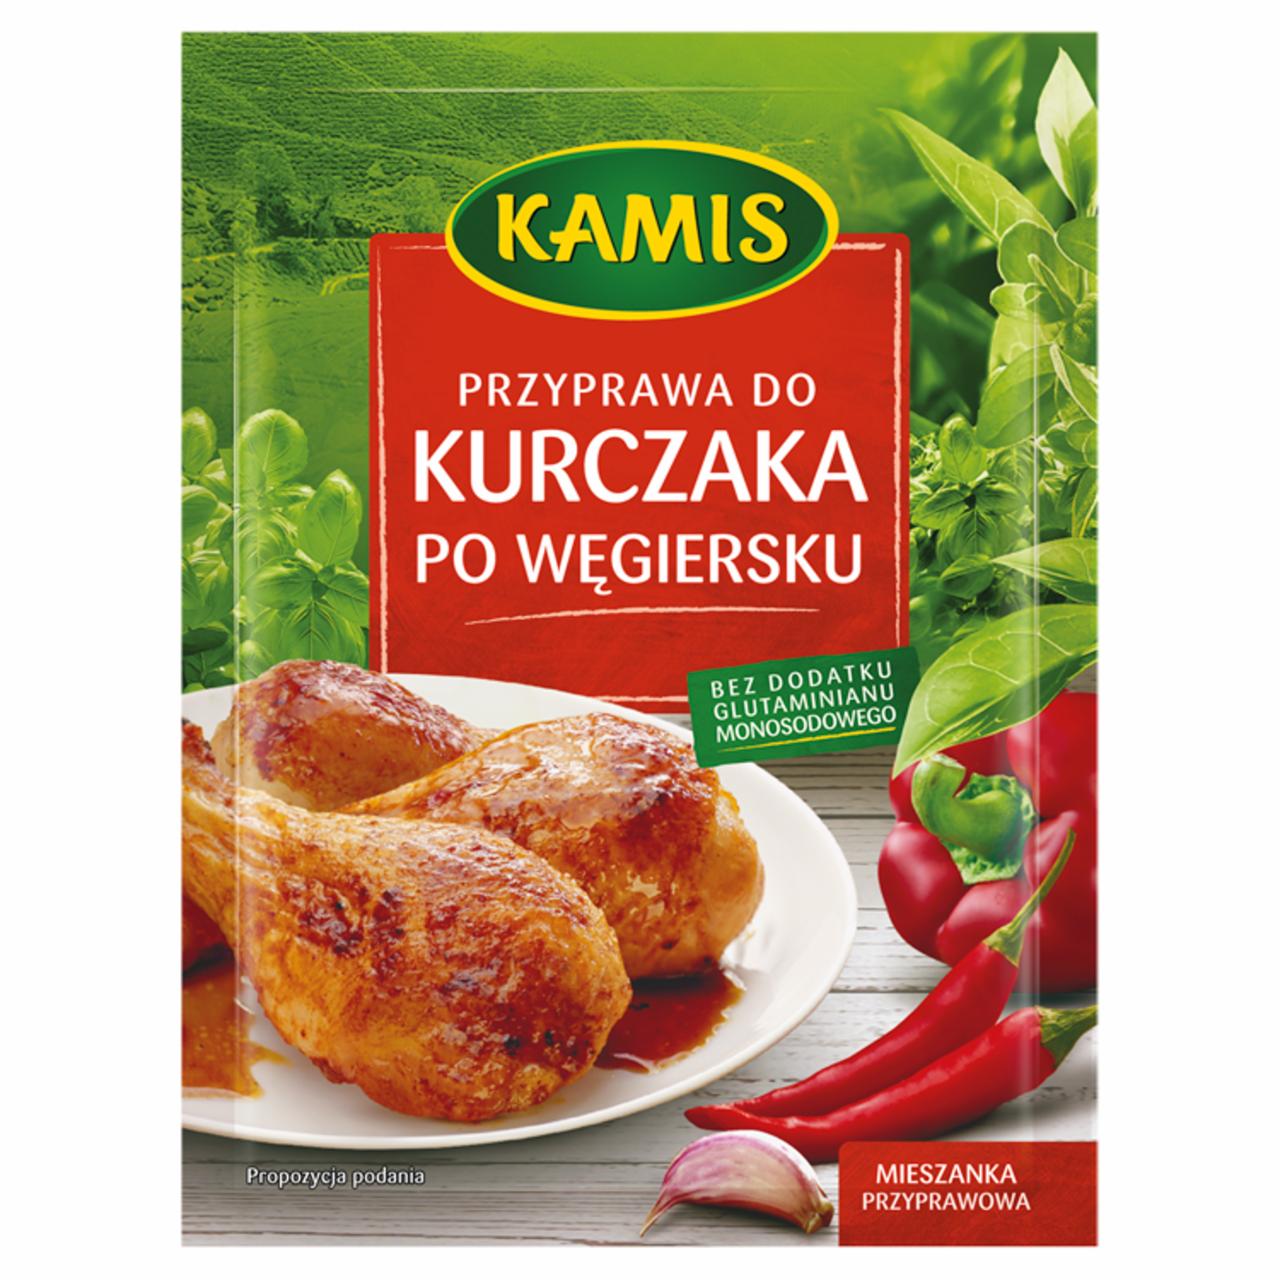 Zdjęcia - Kamis Przyprawa do kurczaka po węgiersku Mieszanka przyprawowa 25 g